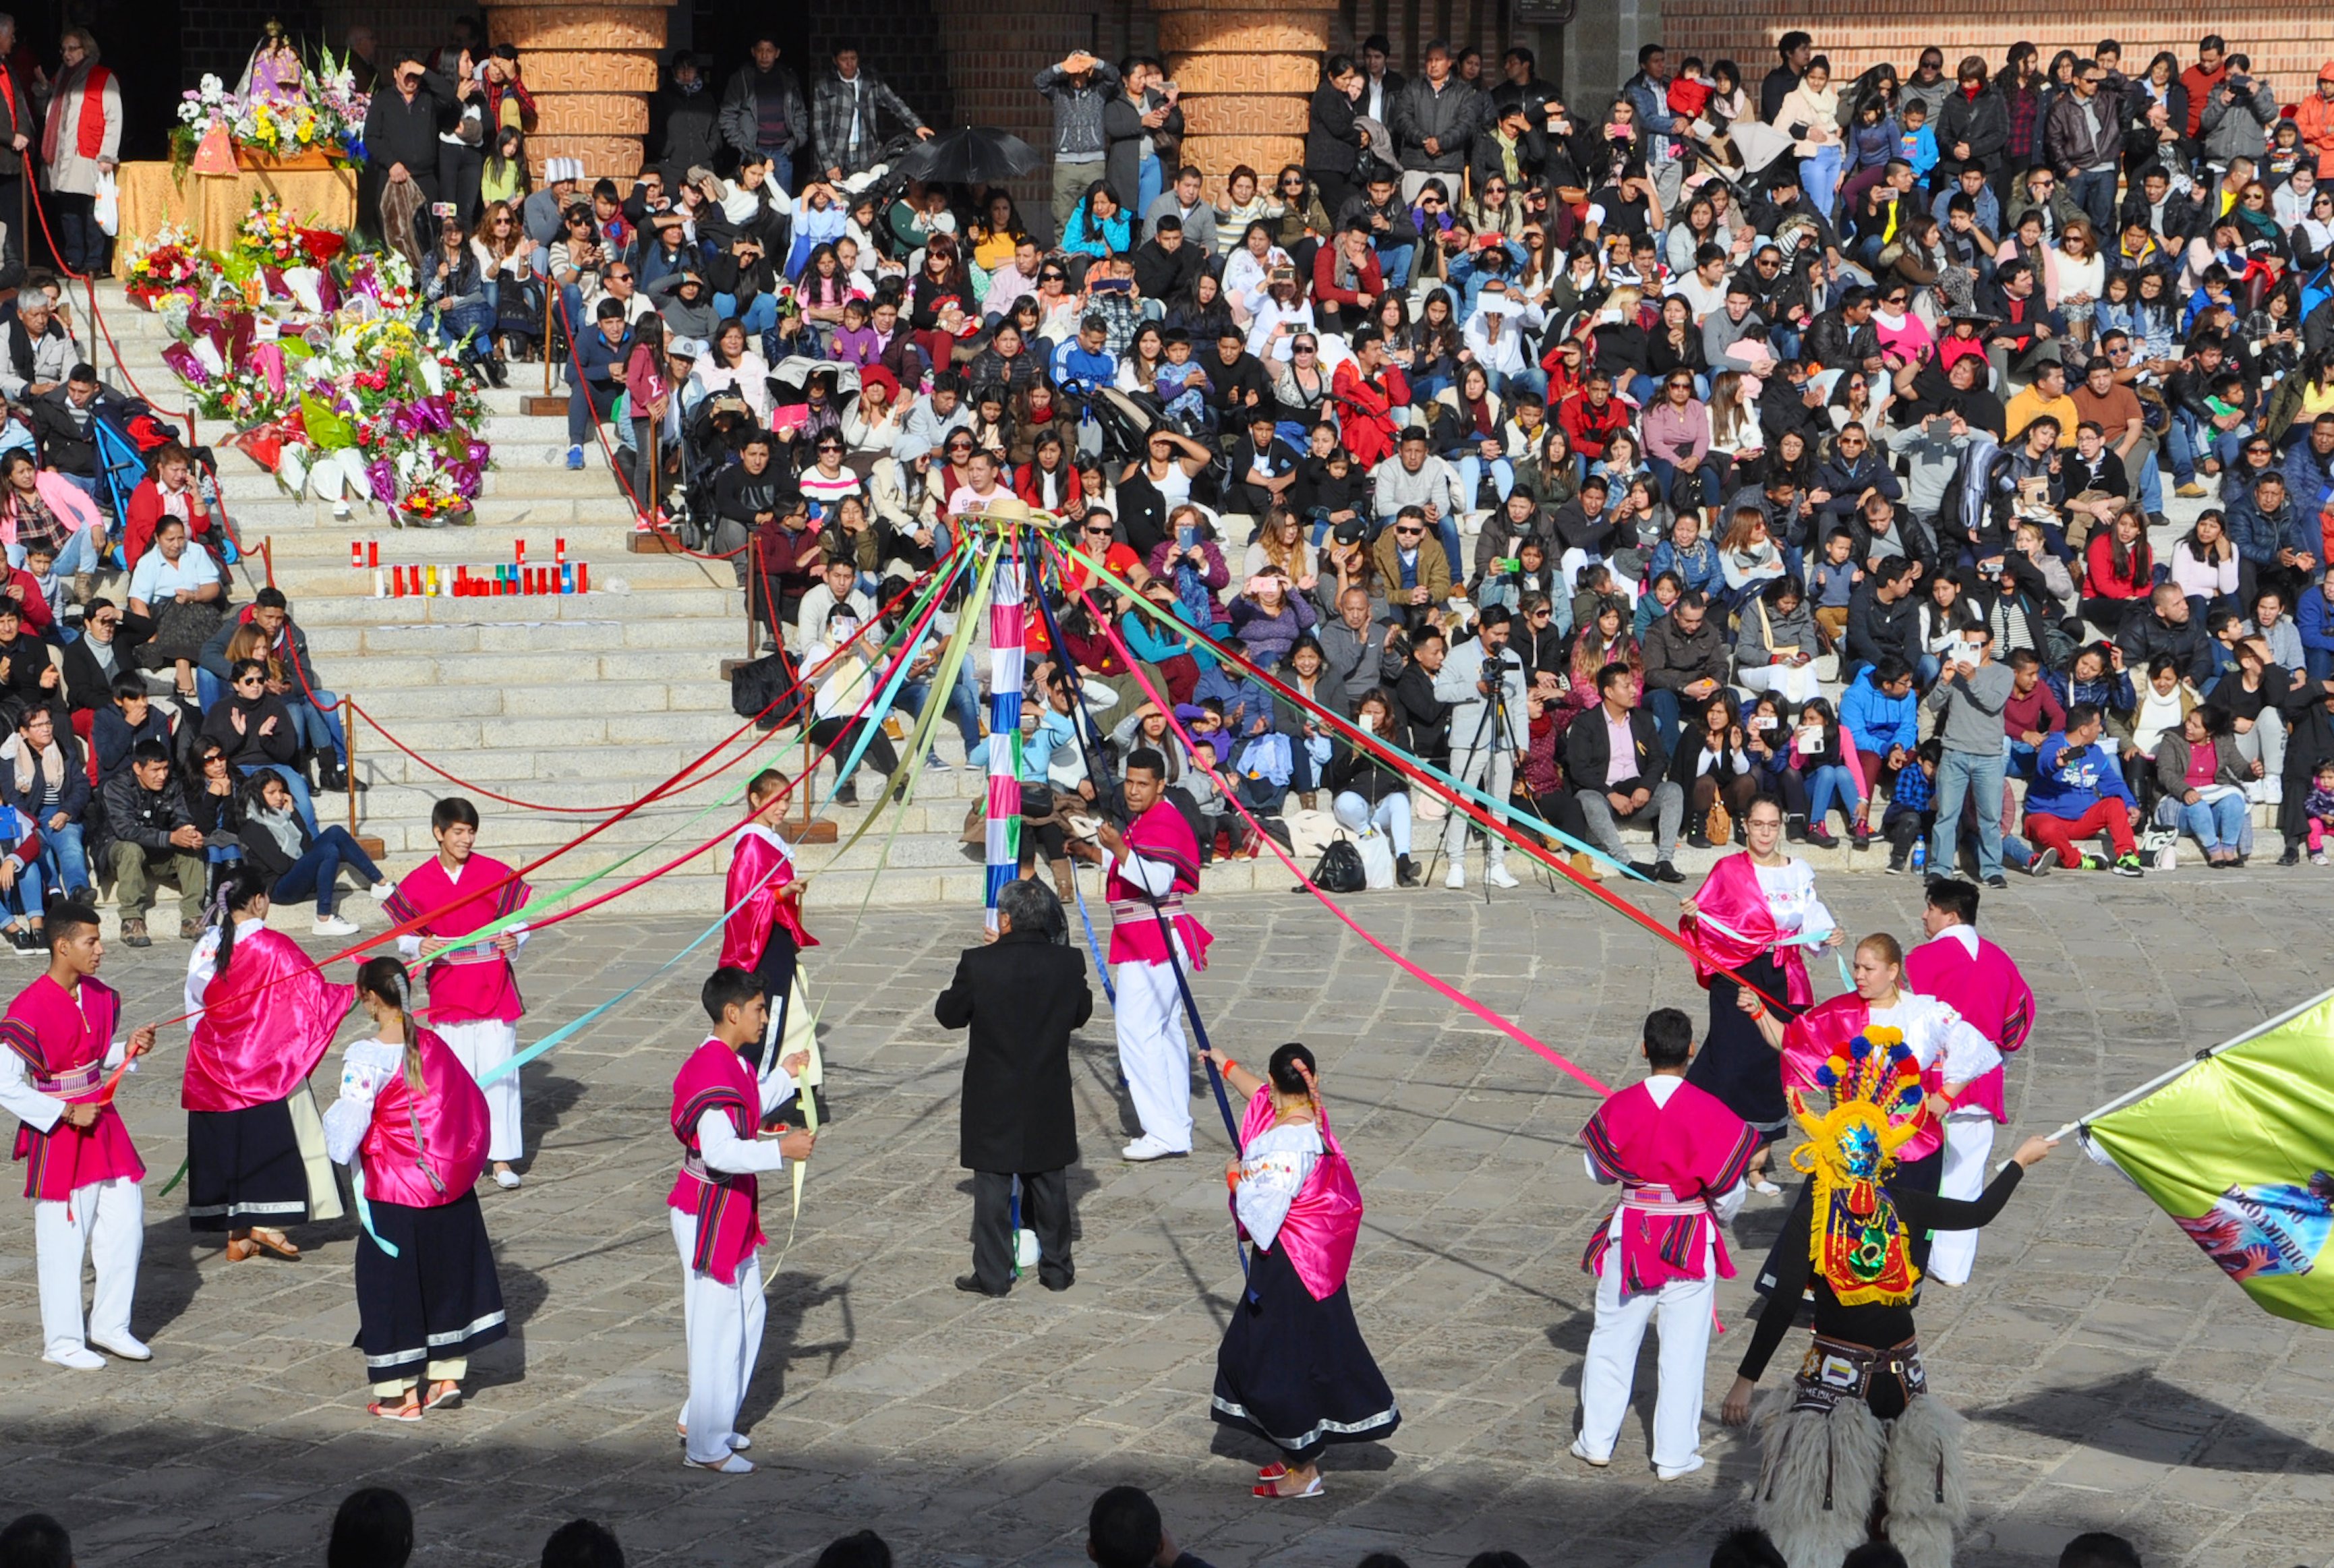 Las danzas folclóricas en Torreciudad (Fto. Santuario)